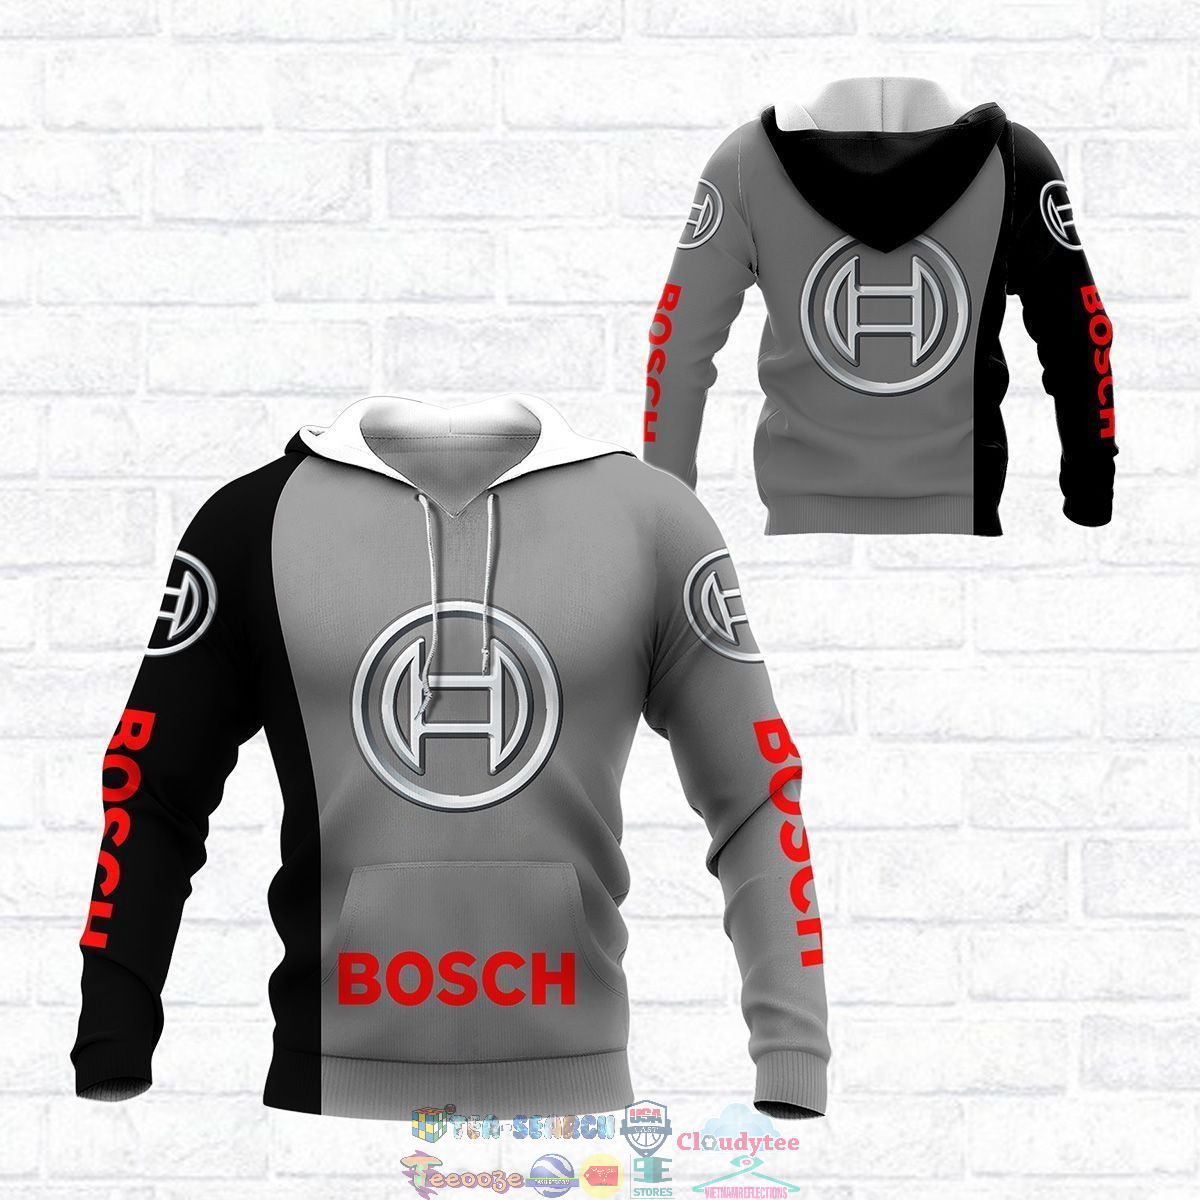 Robert Bosch GmbH ver 2 3D hoodie and t-shirt – Saleoff